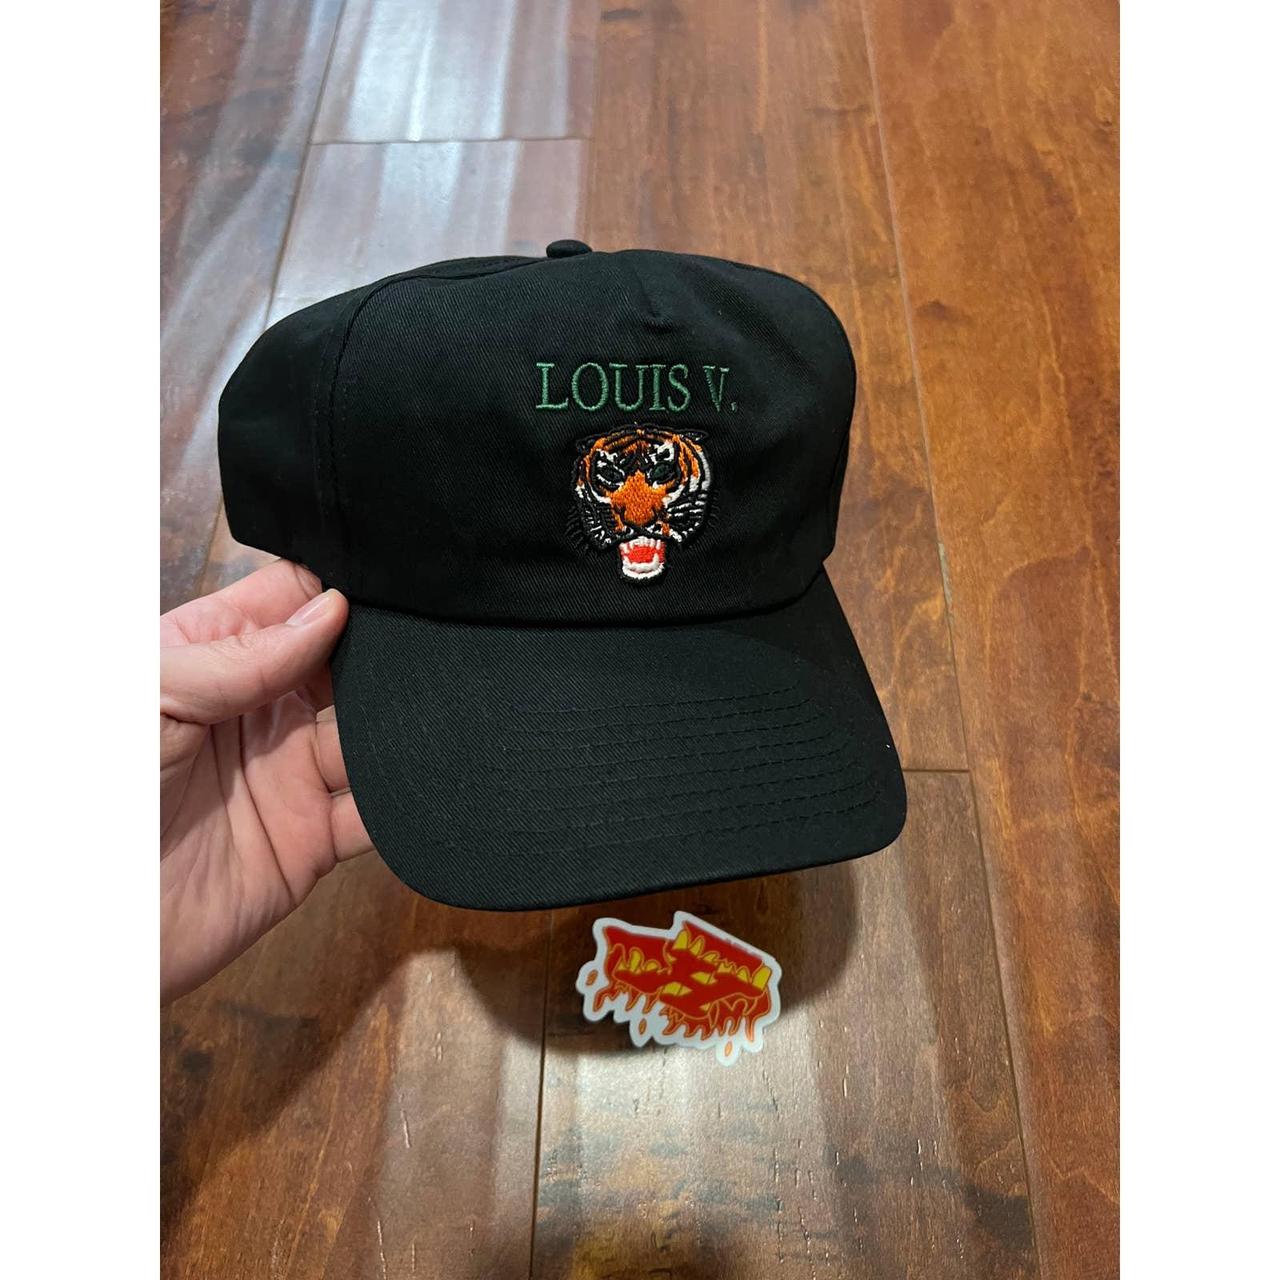 Market Men's Black and Orange Hat (3)